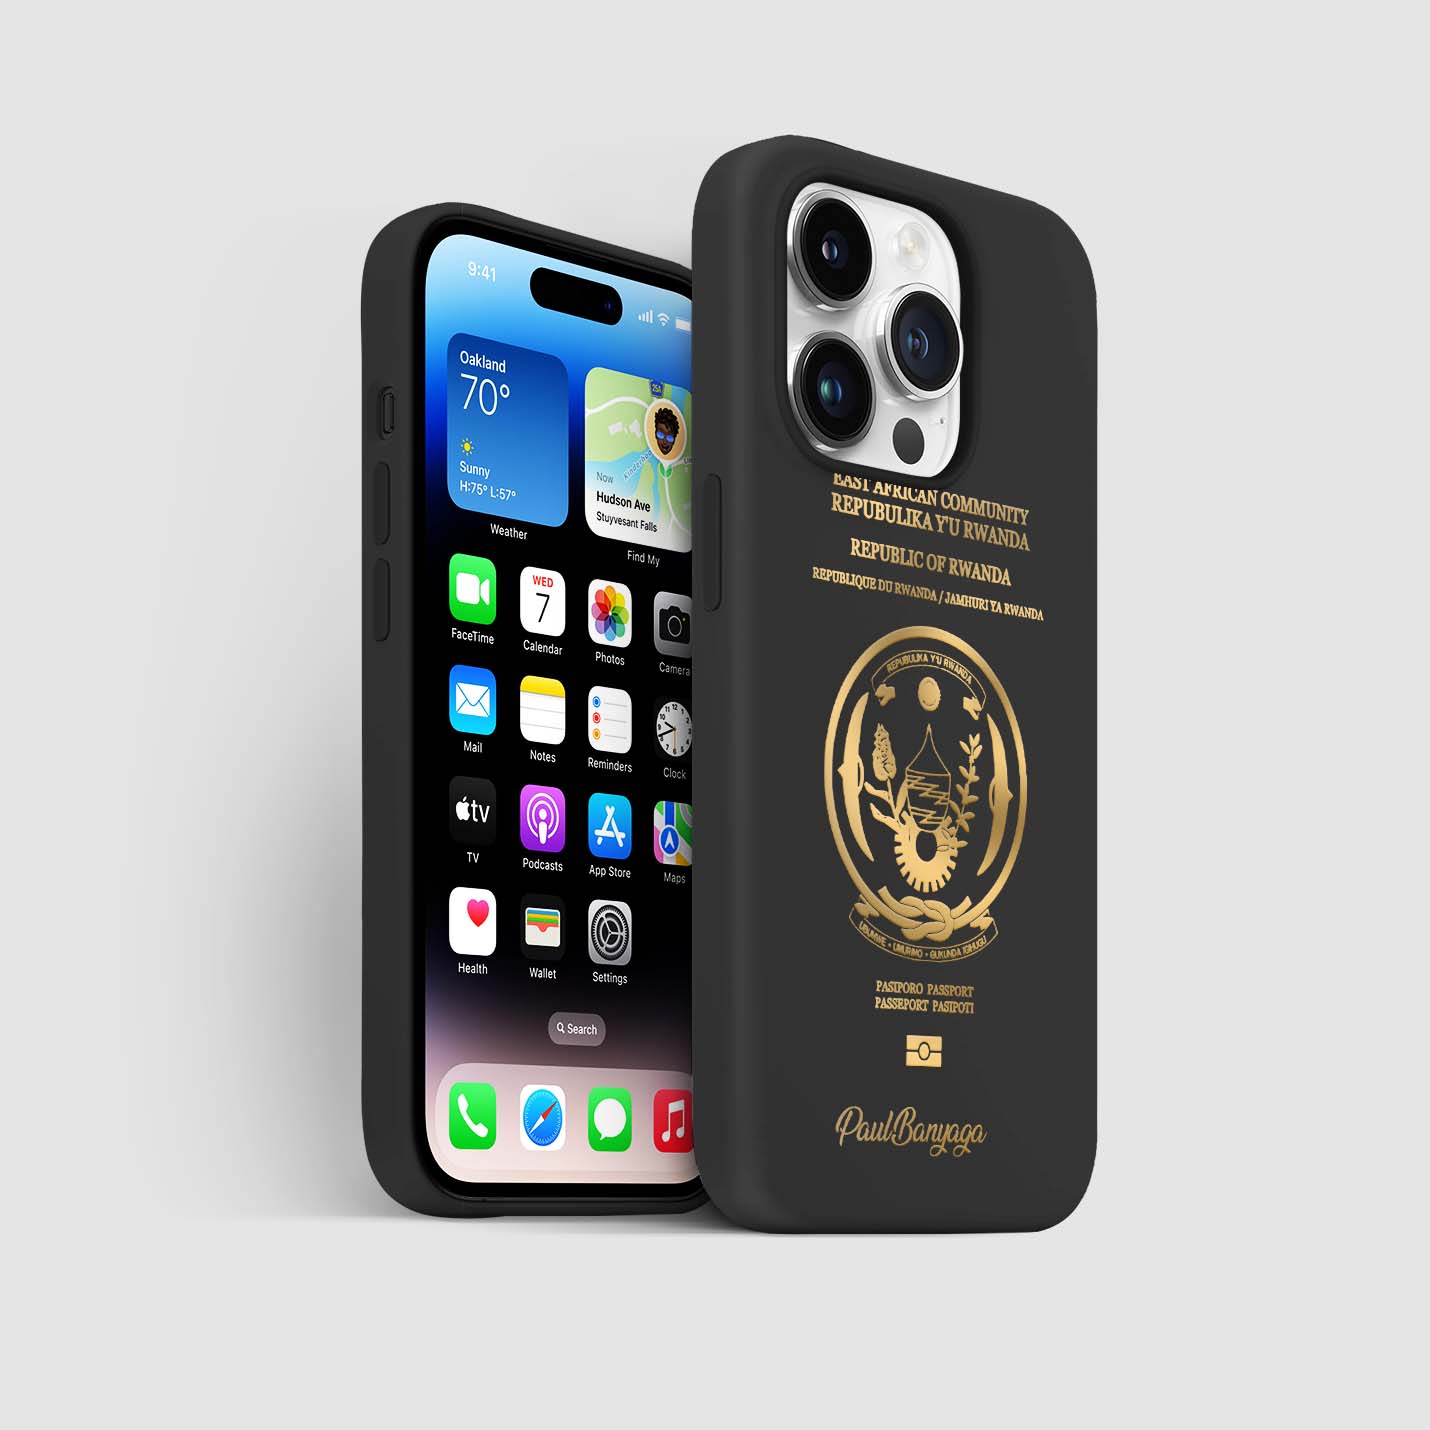 Handyhüllen mit Reisepass - Ruanda - 1instaphone